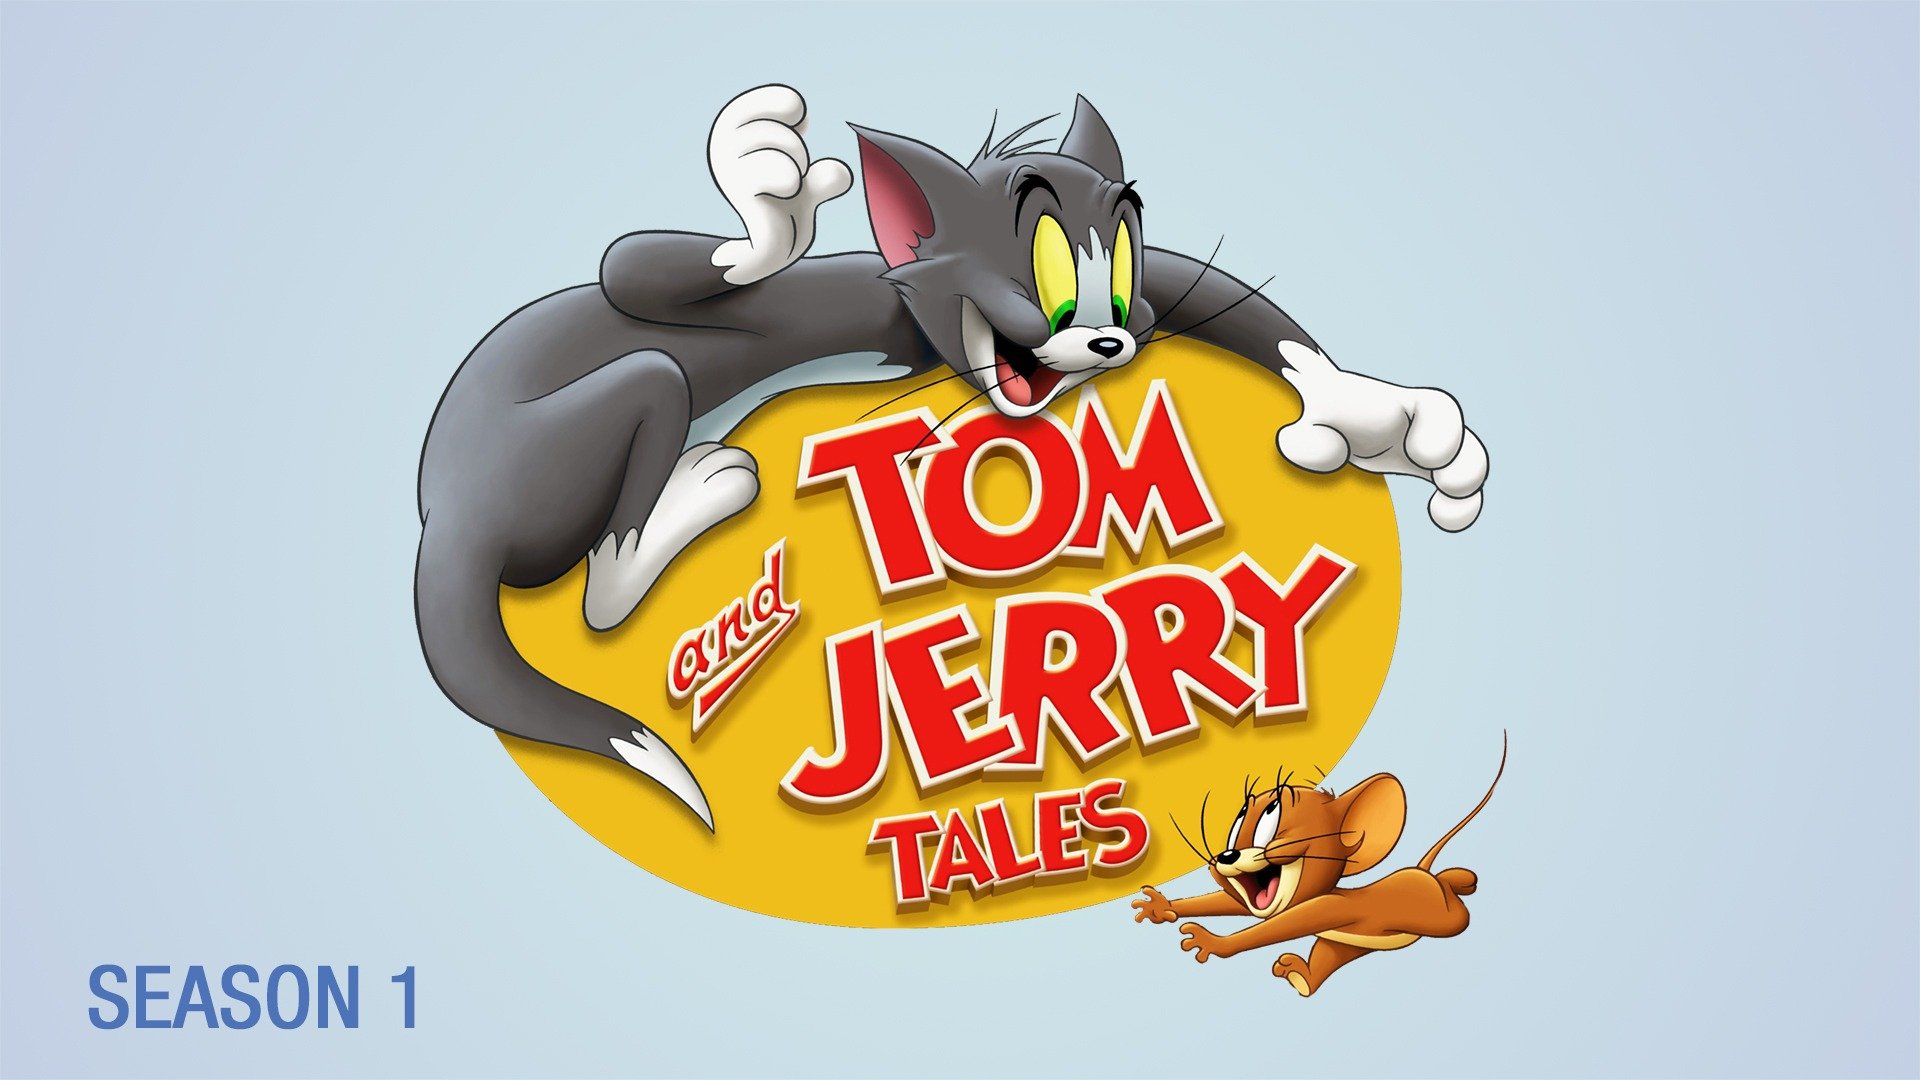 Jerry том и джерри. Том и Джерри. NJV B LKTHB. Том и Джерри картинки. Том и Джерри персонажи.